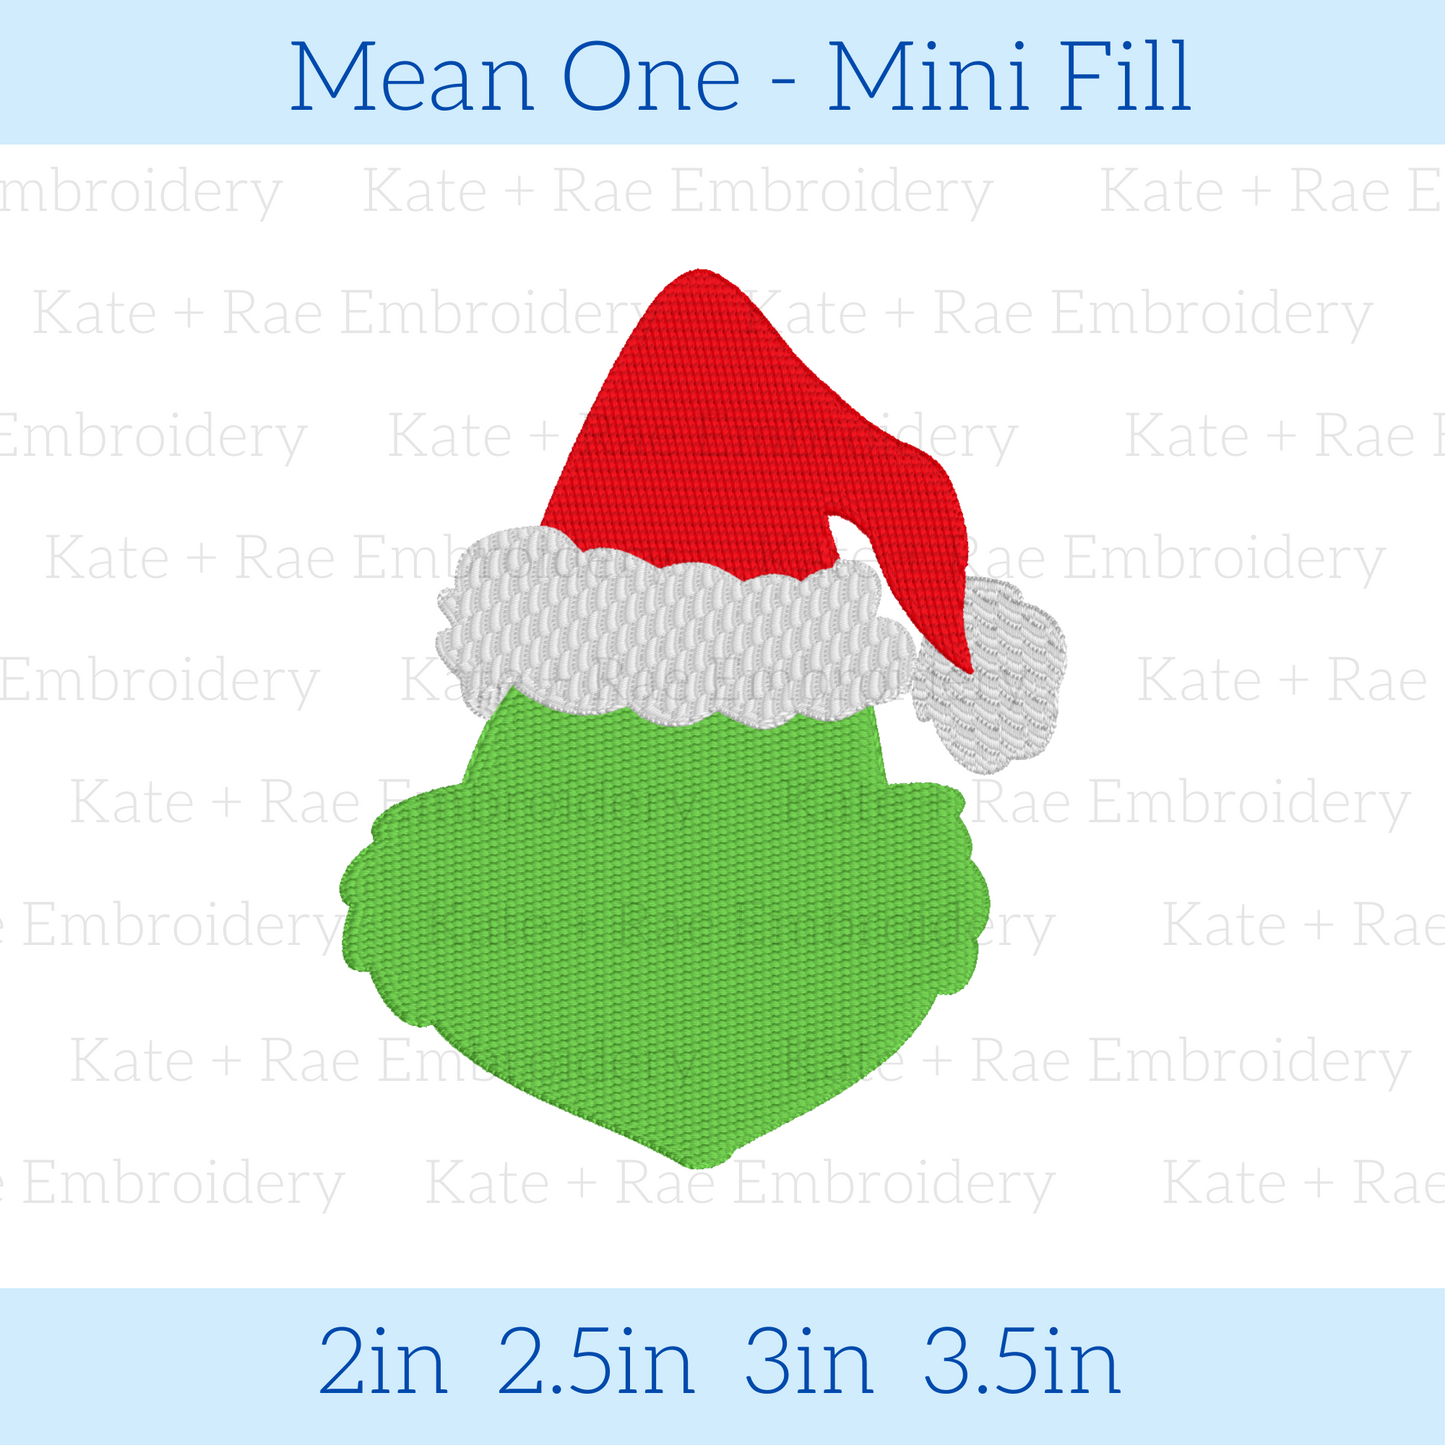 Mean One Mini Fill Embroidery Design